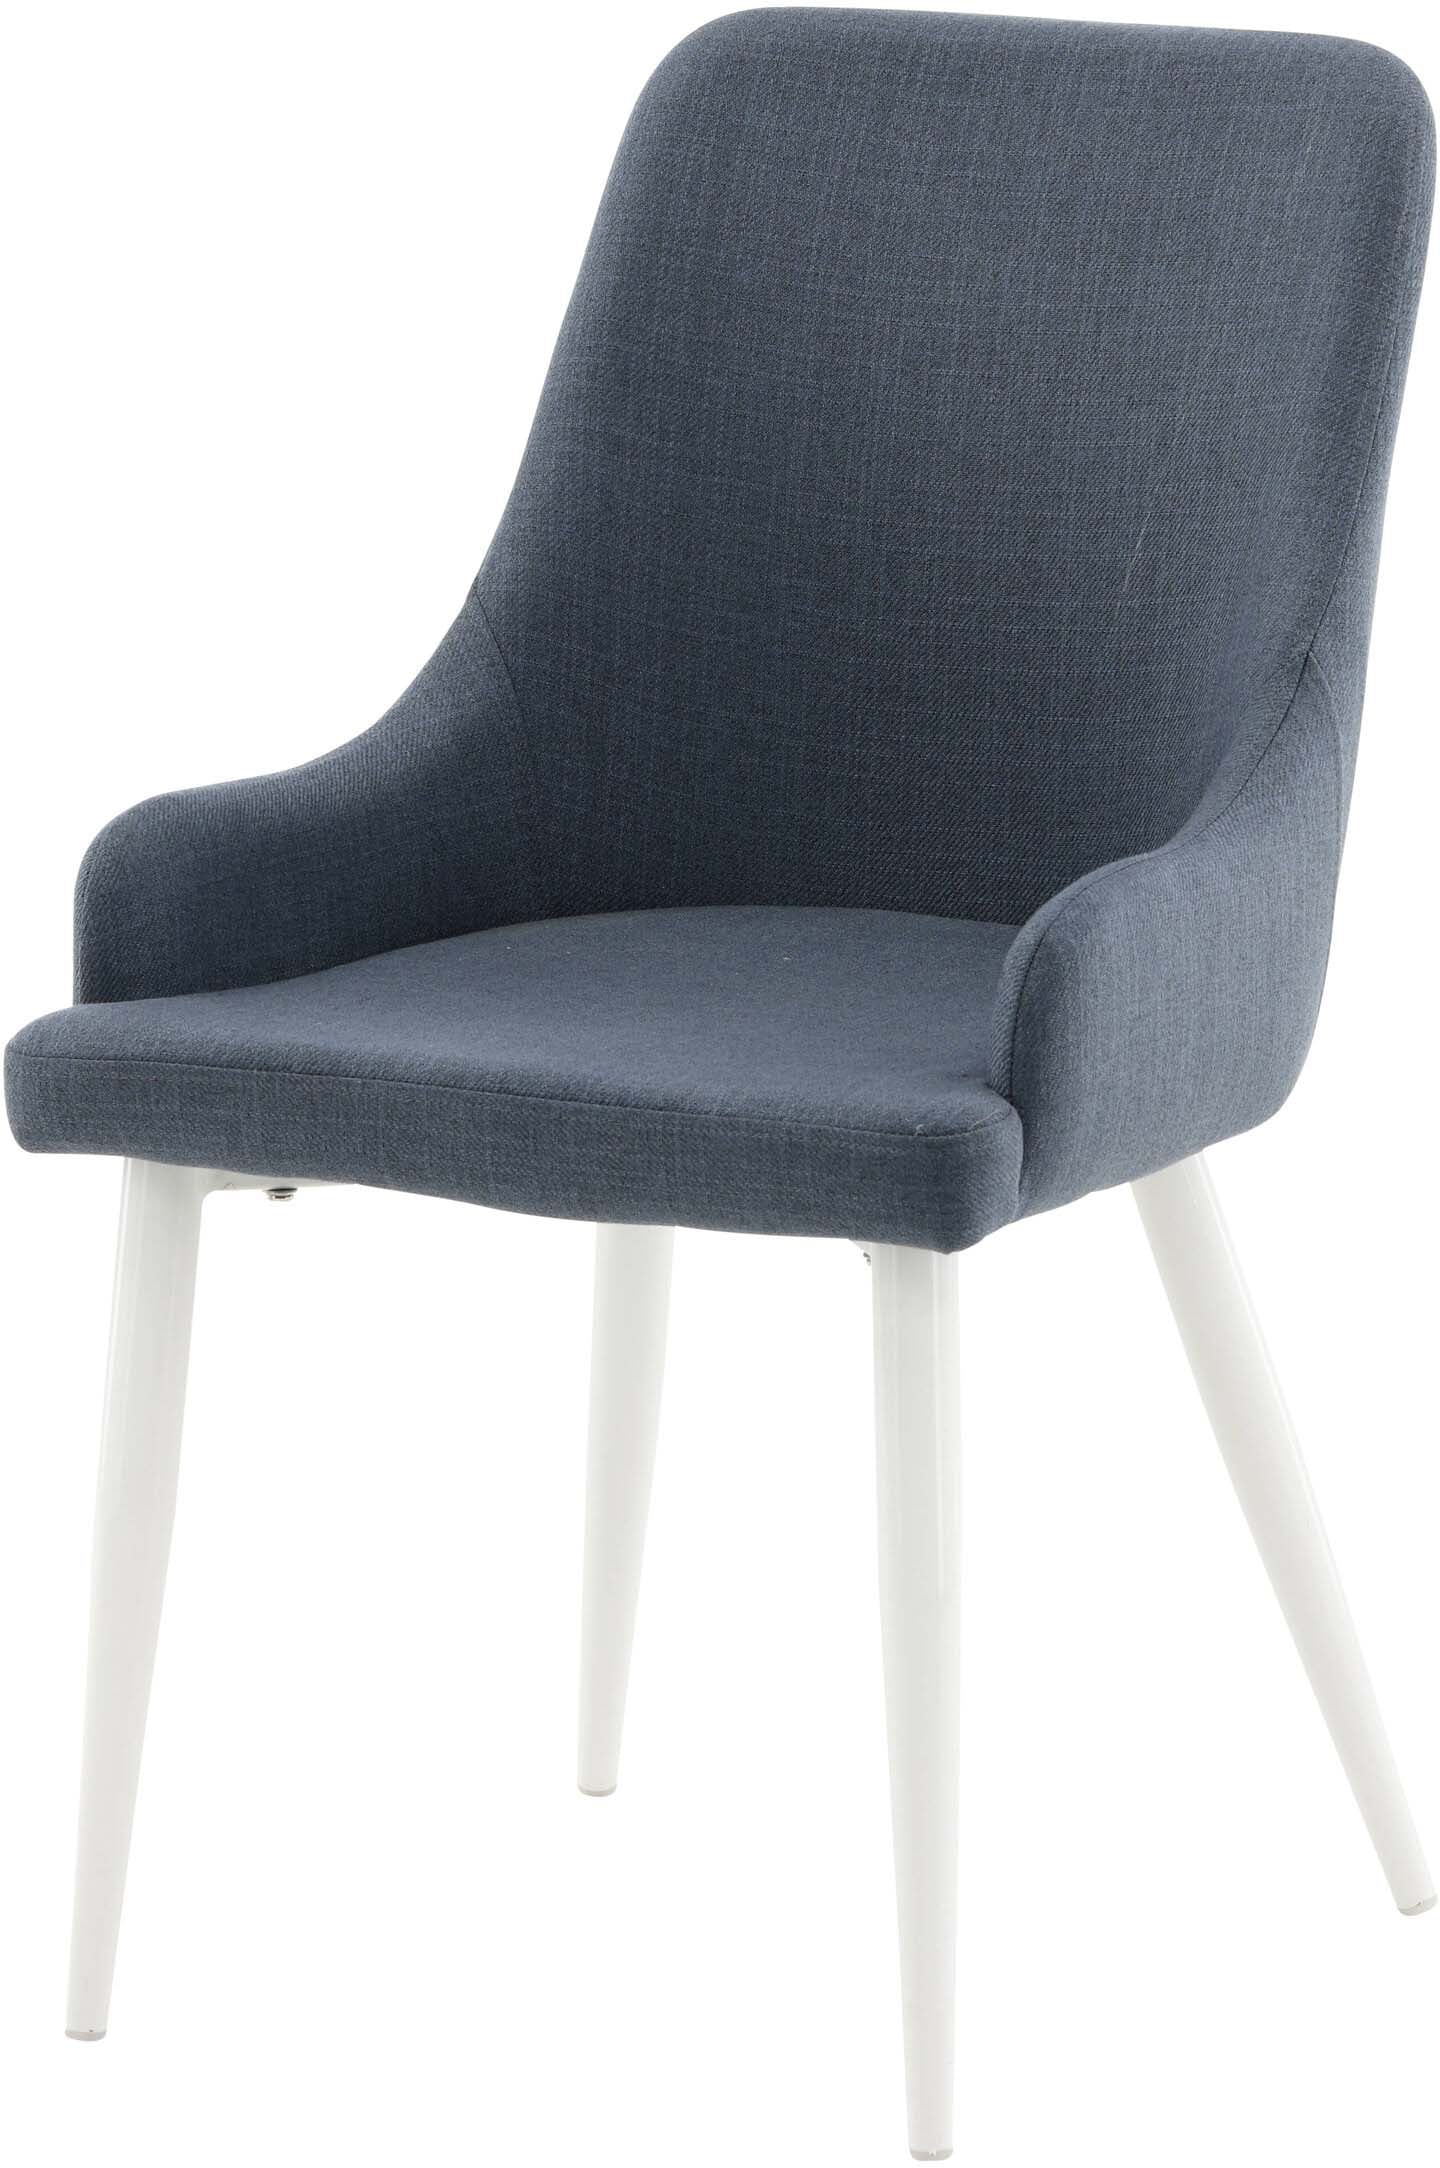 Plaza Stuhl in Blau / Weiss präsentiert im Onlineshop von KAQTU Design AG. Stuhl ist von Venture Home